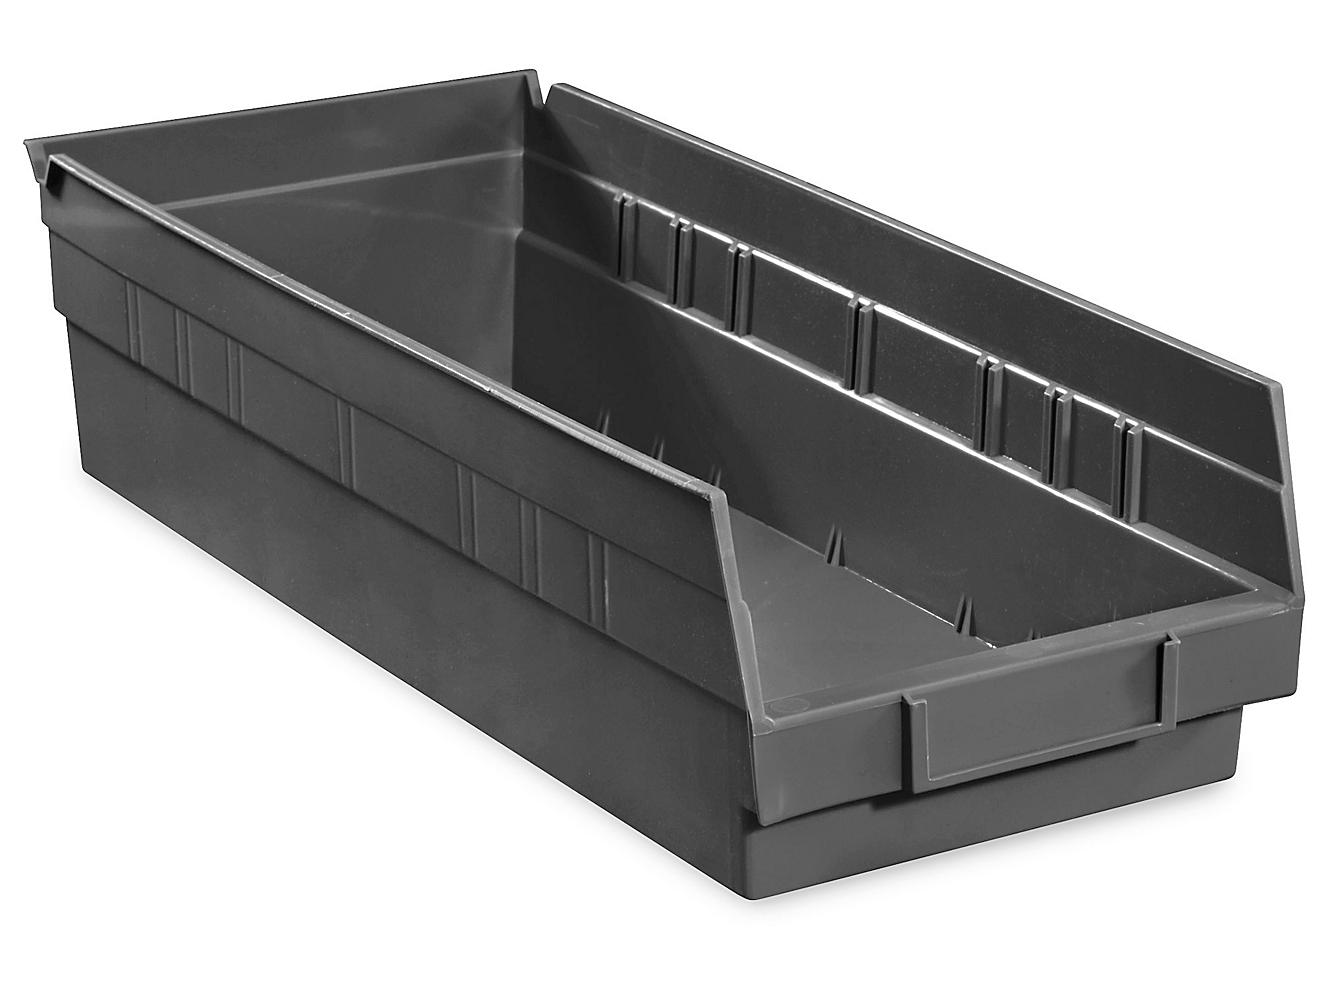 Set of 40 ULINE Nesting Storage Shelf Bins Black Molded Plastic 7 x 18 x 4 